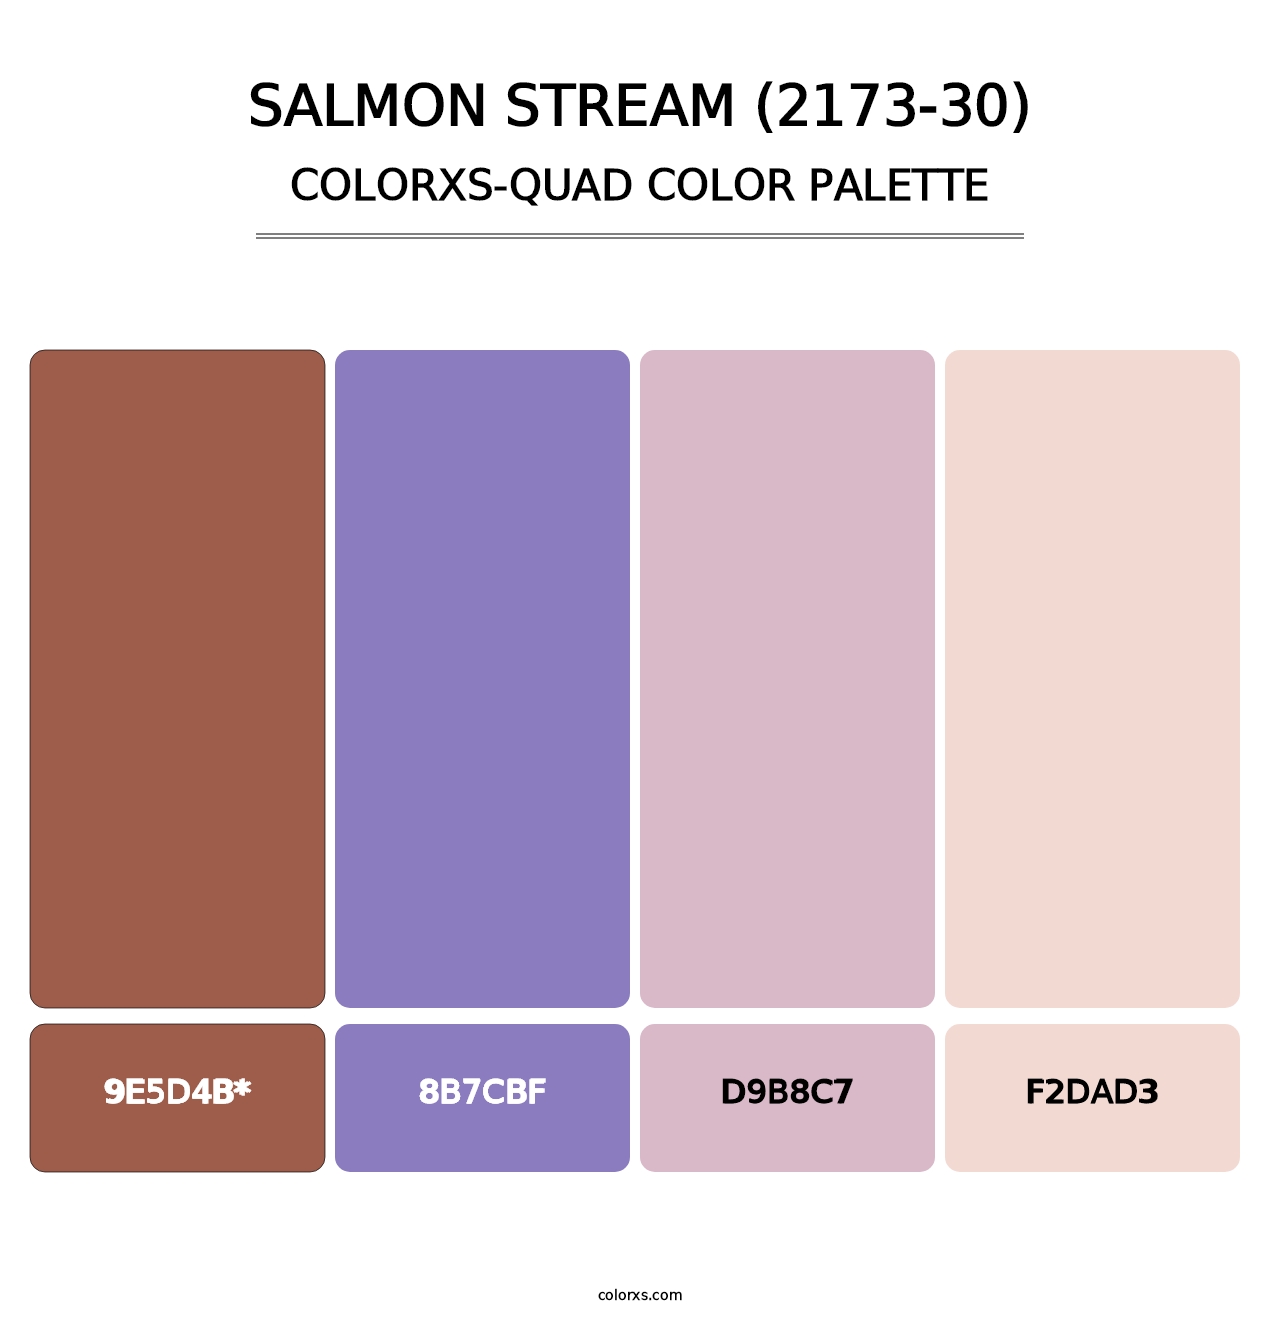 Salmon Stream (2173-30) - Colorxs Quad Palette